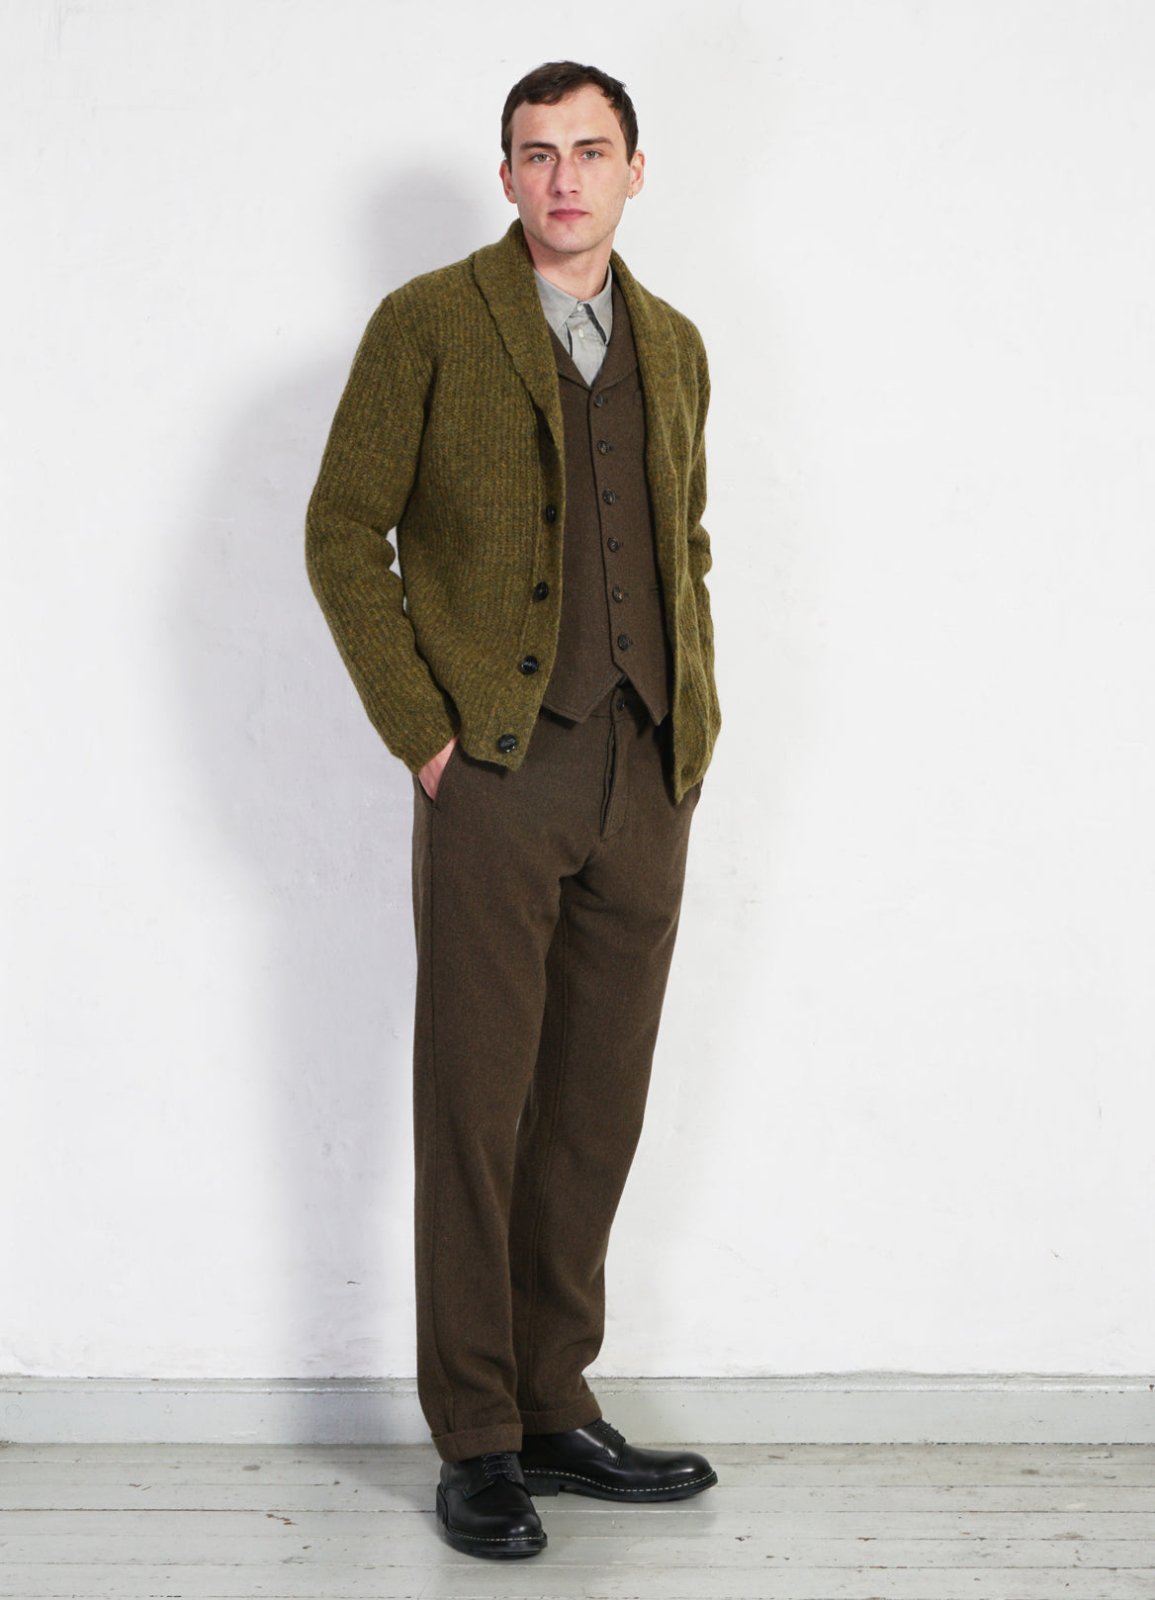 HANSEN GARMENTS - WILLIAM | Lapel Waistcoat | Brown Herringbone - HANSEN Garments